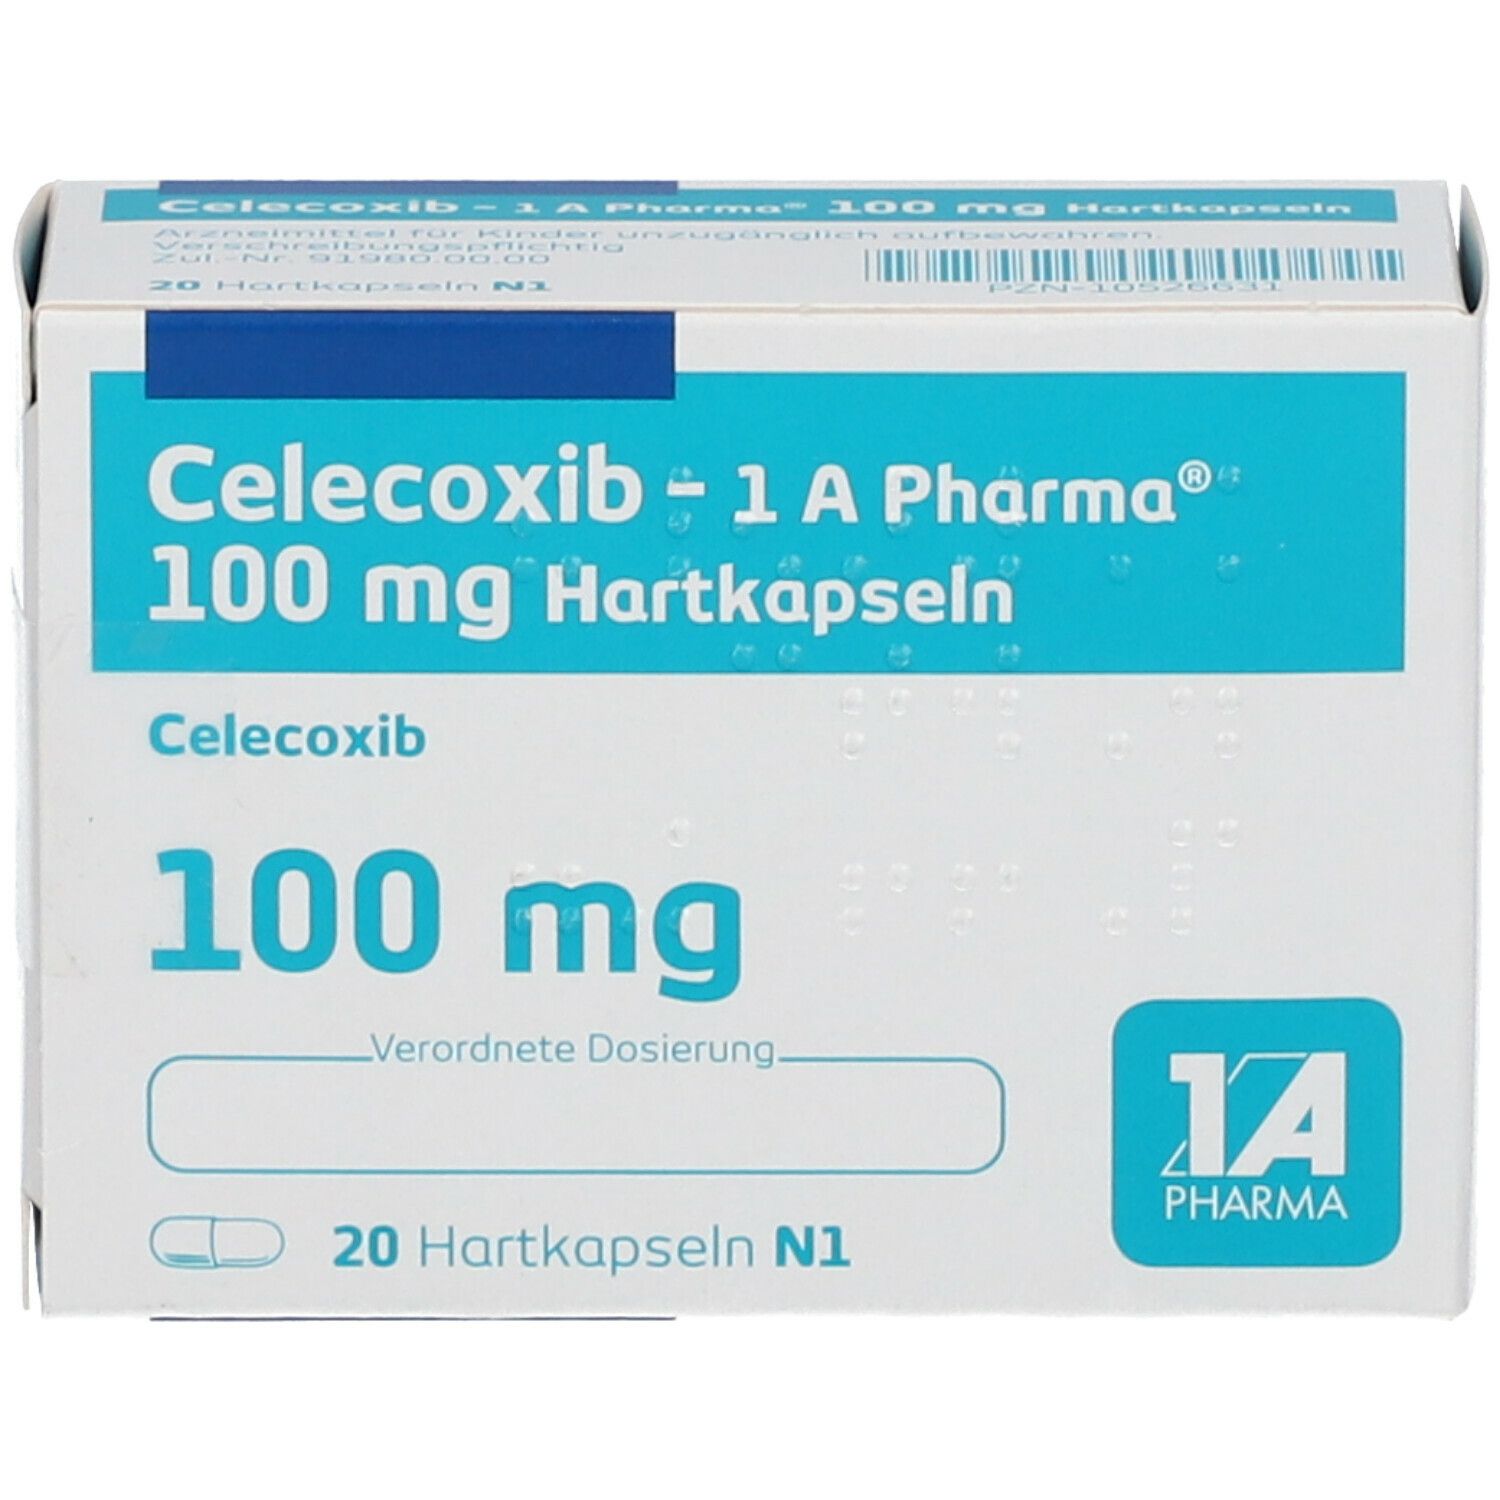 Celecoxib - 1 A Pharma® 100 mg